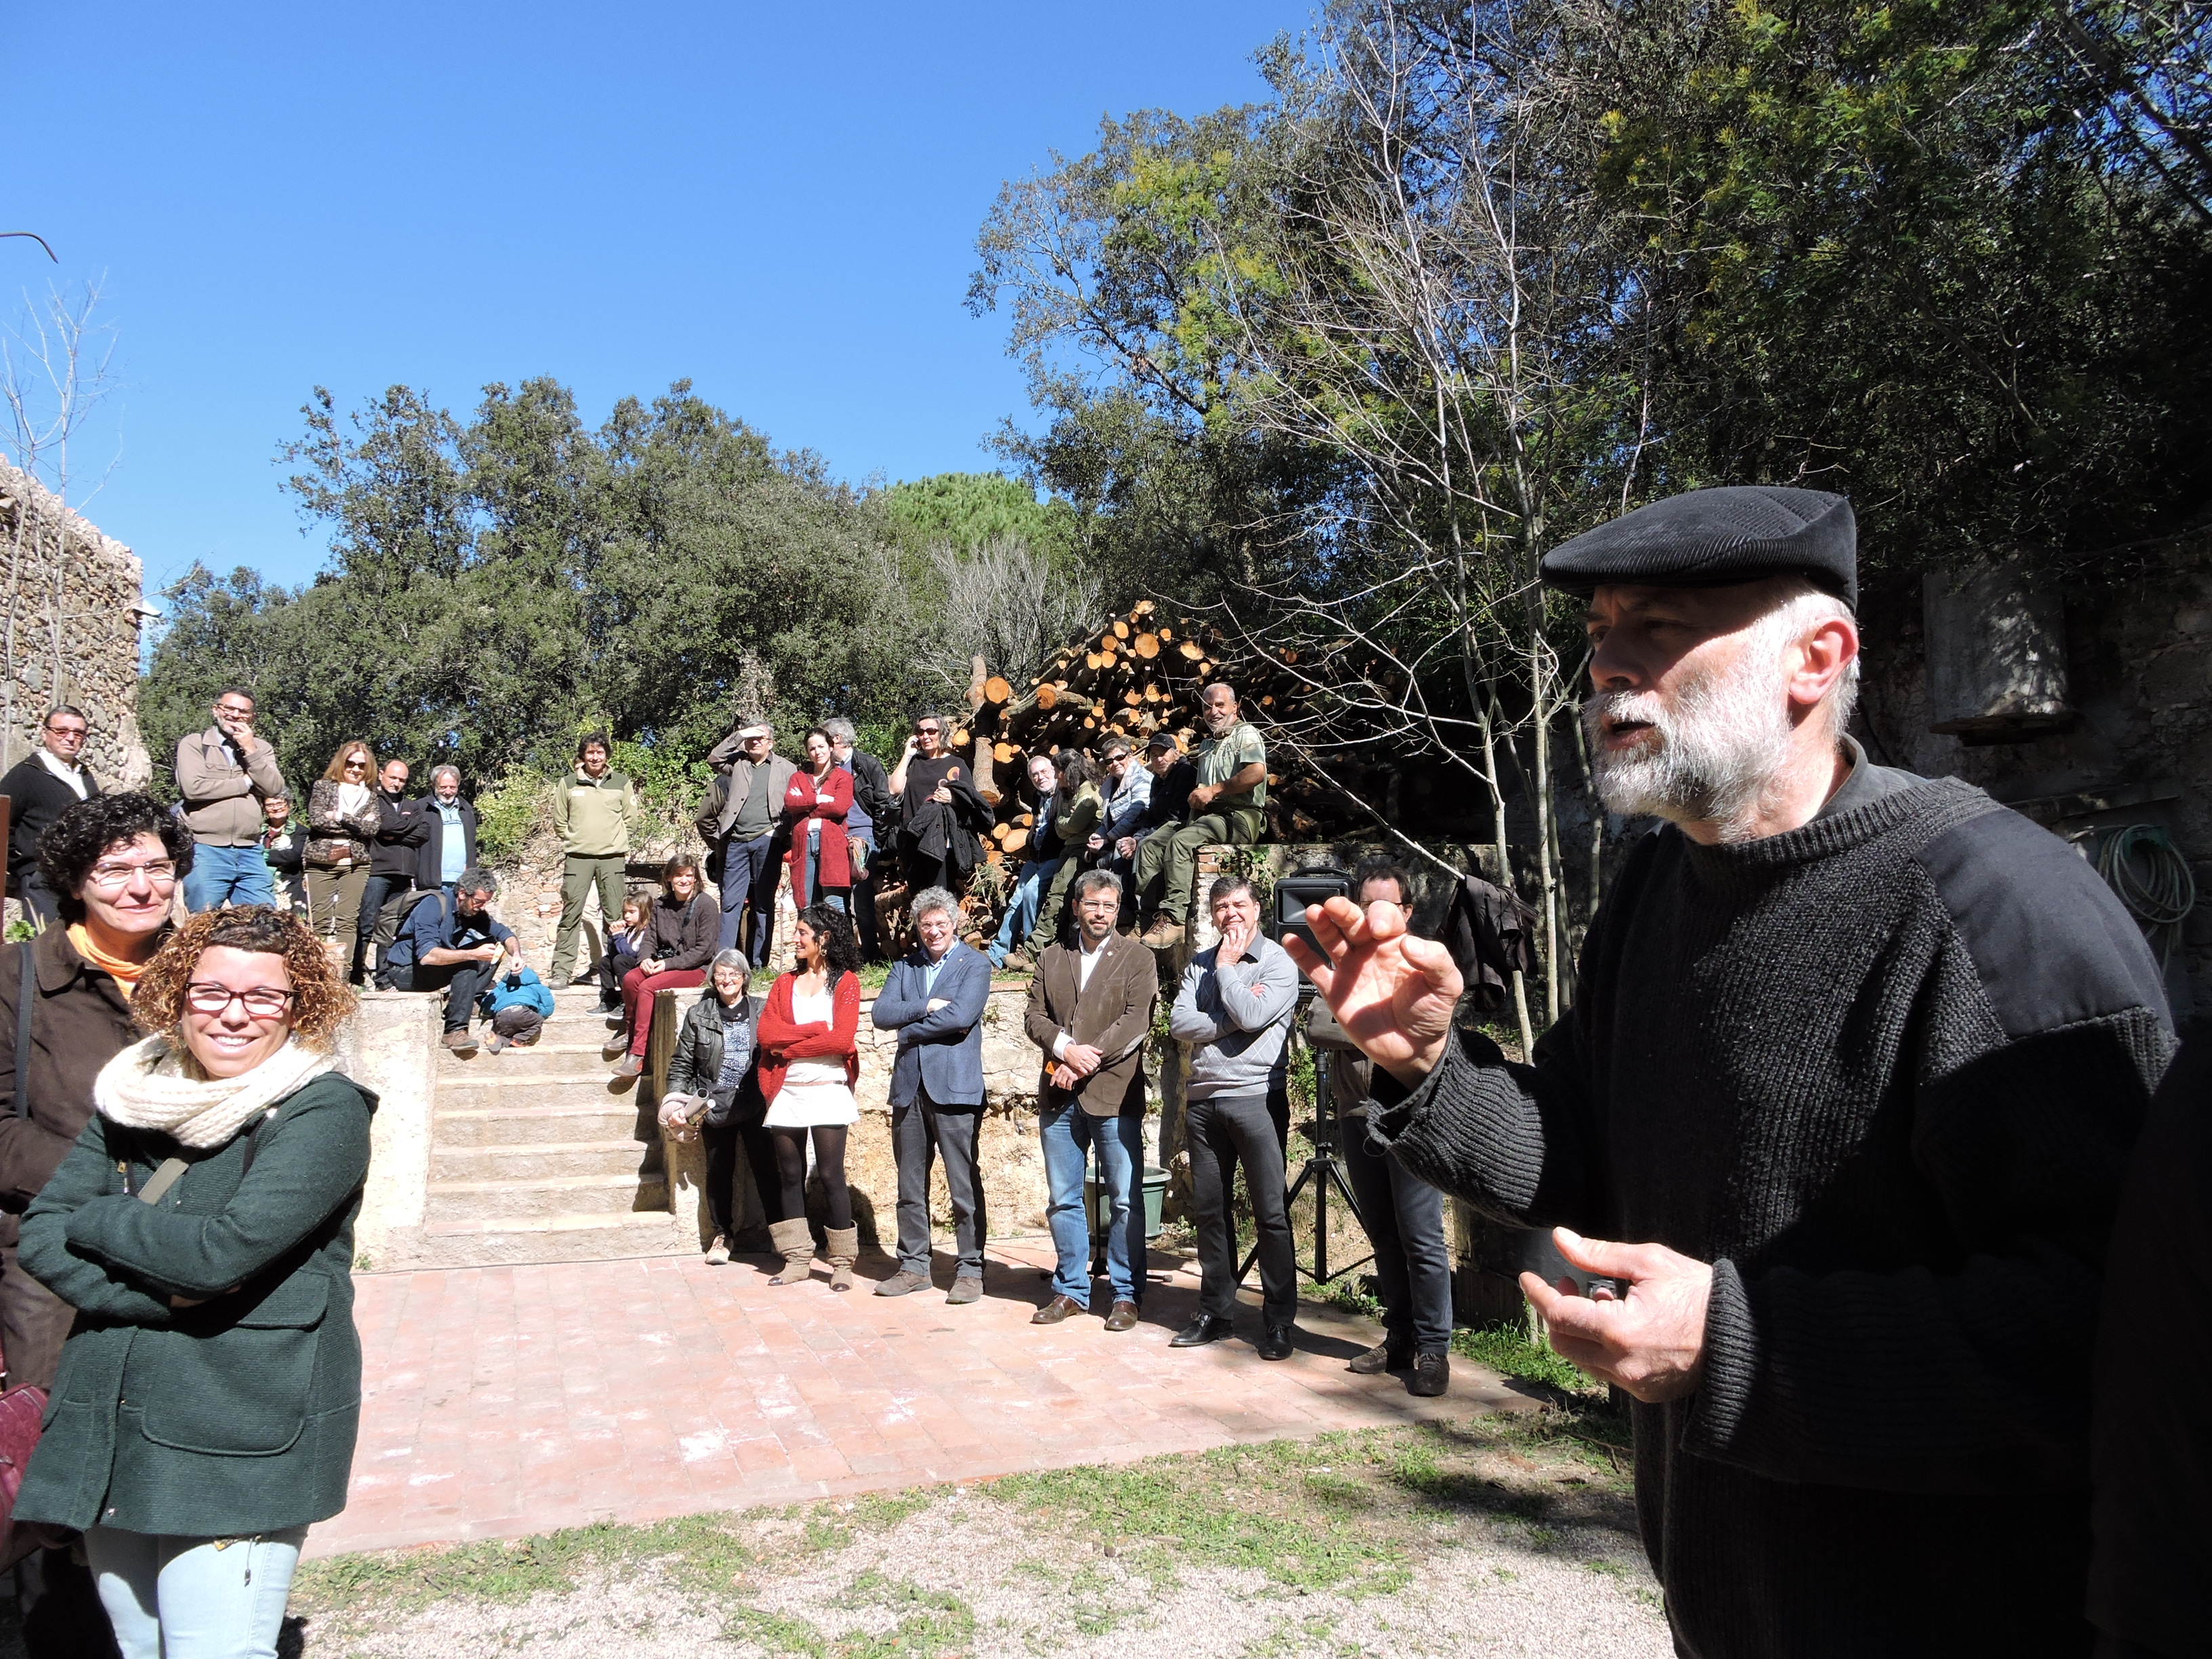 Inauguració seu del Consorci del Parc de la Serralada Litoral a Can Magarola